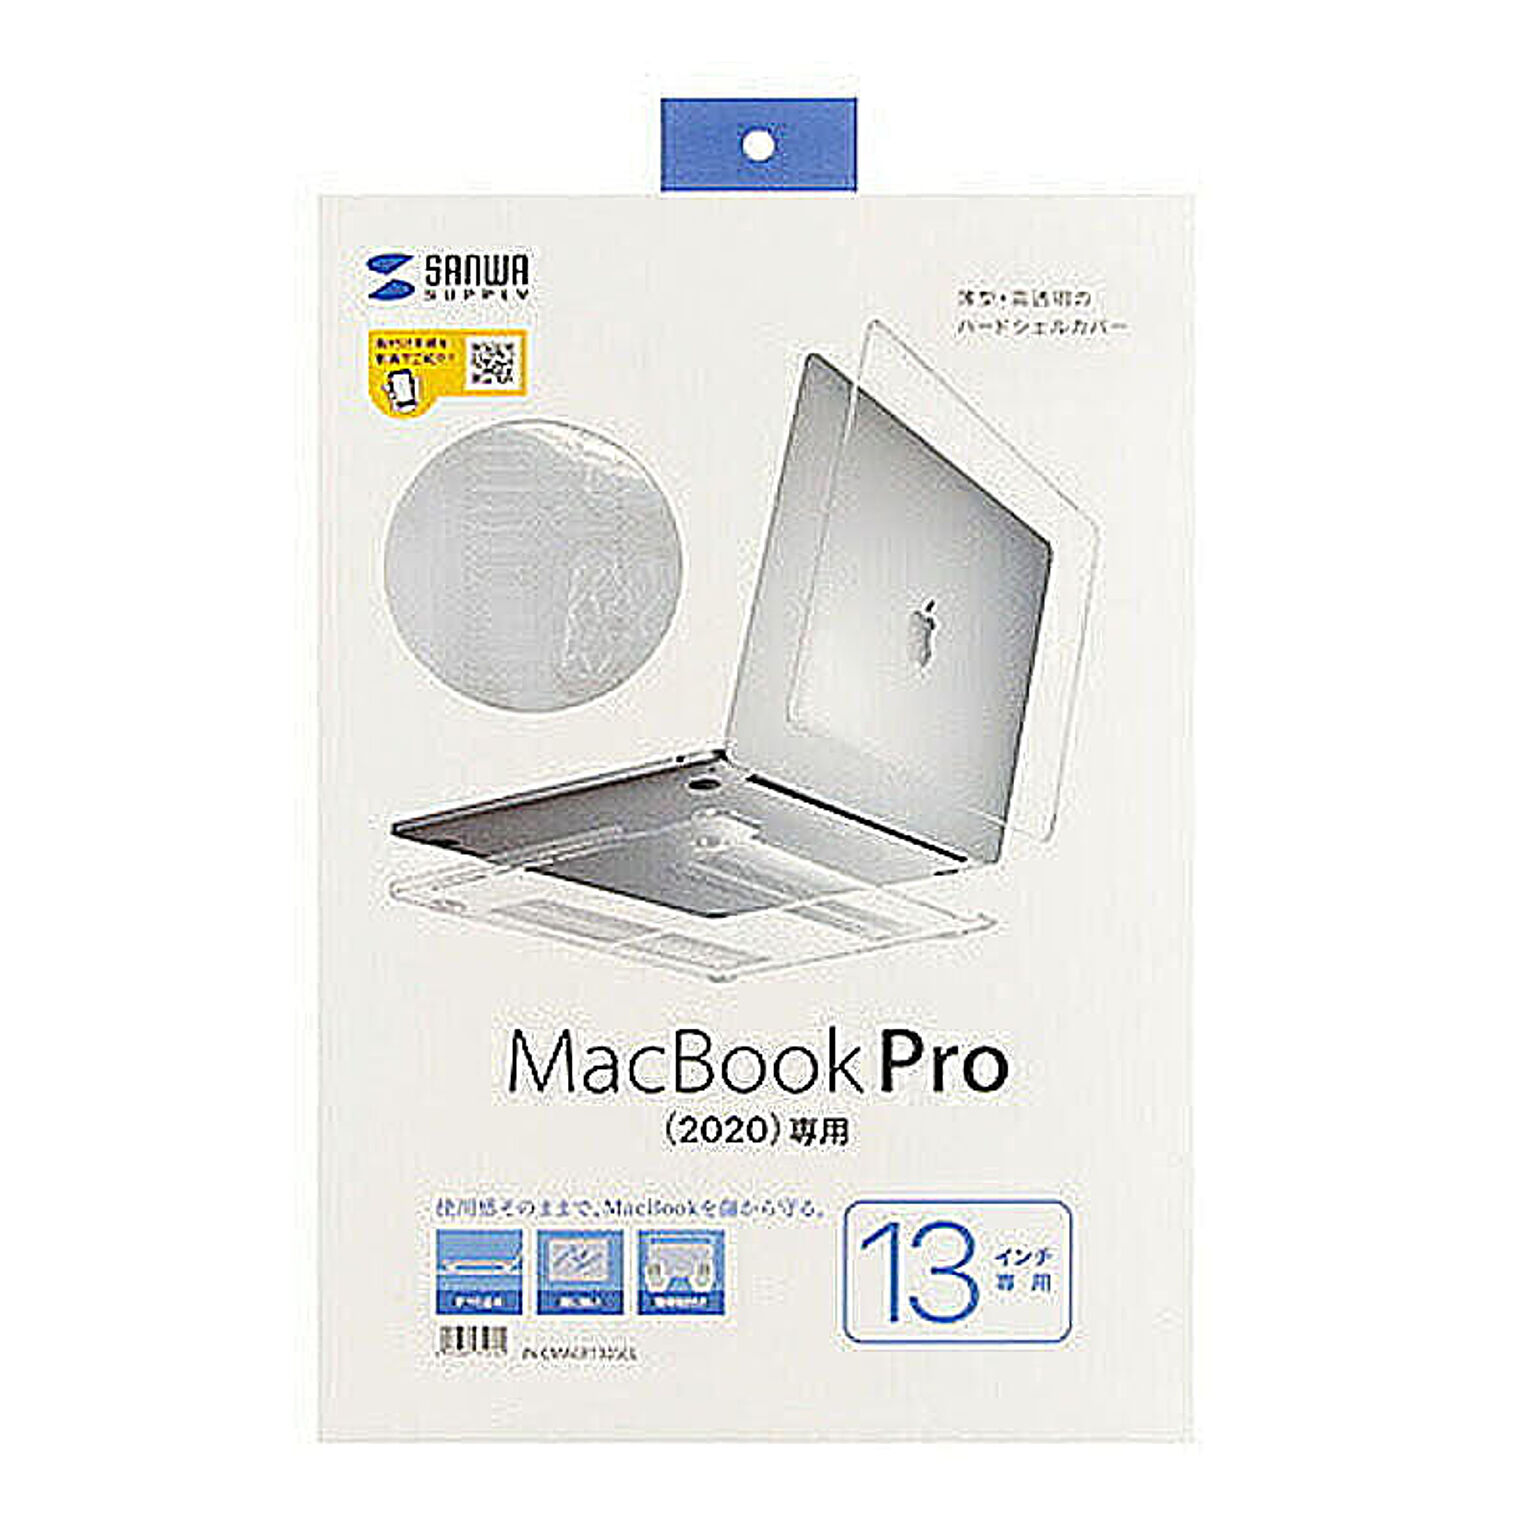 サンワサプライ MacBook Pro用ハードシェルカバー IN-CMACP1305CL 管理No. 4969887710760